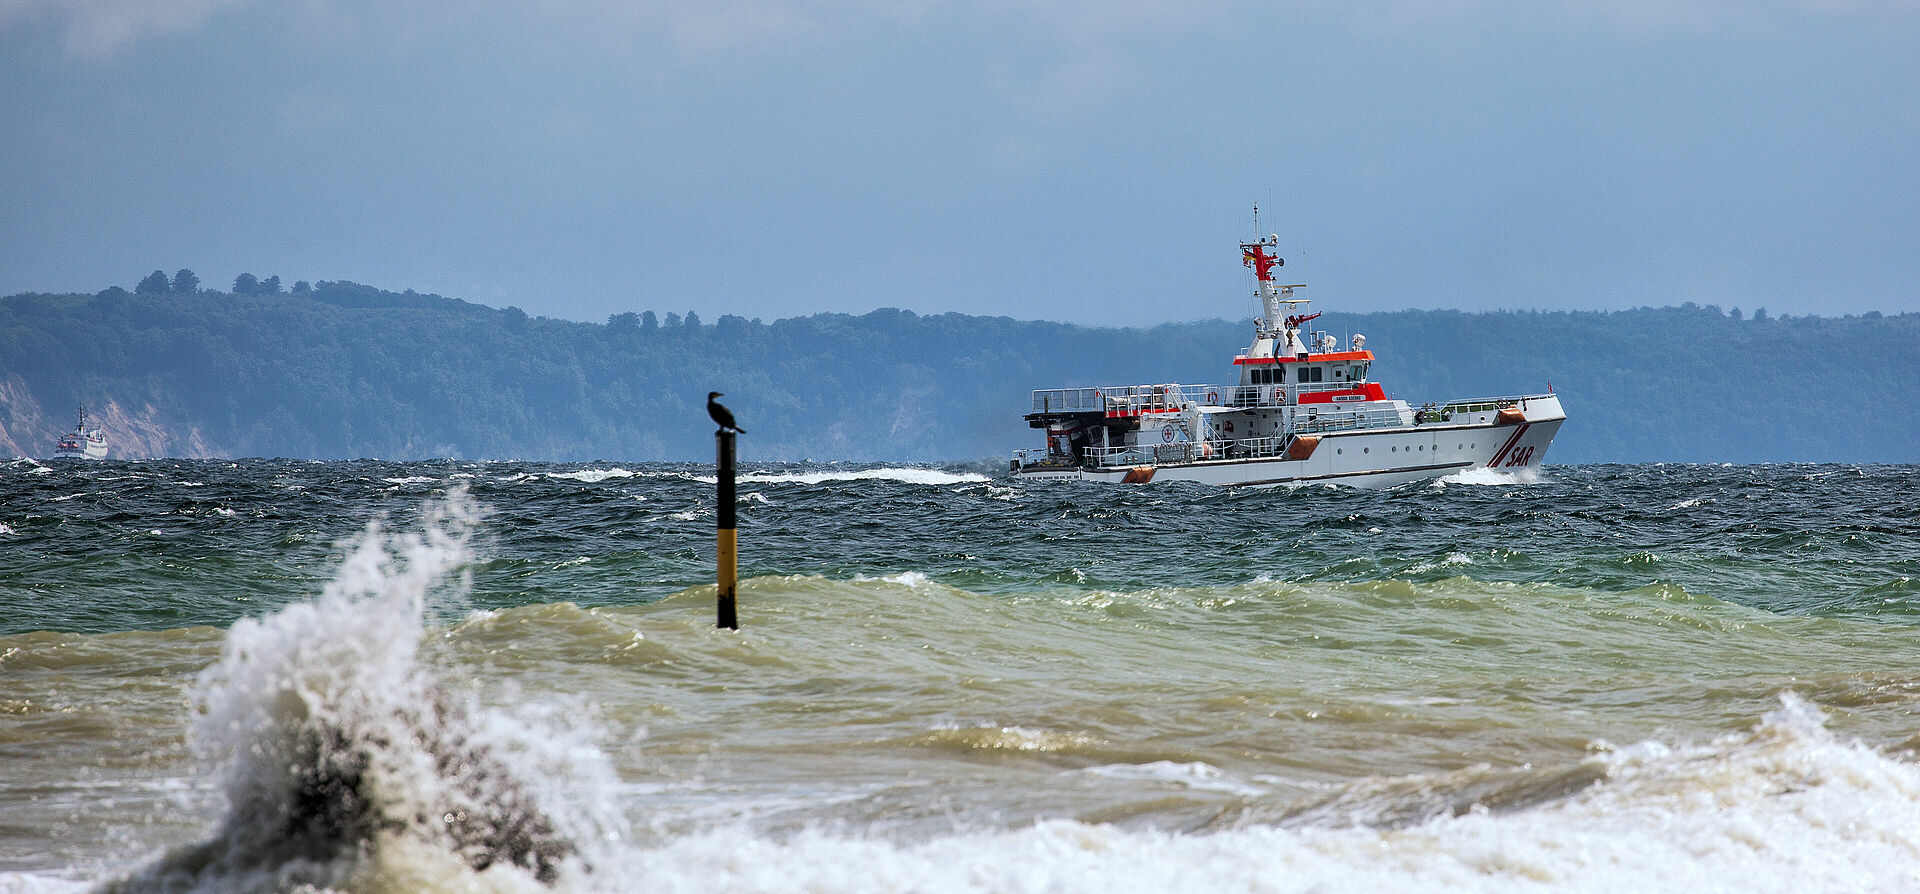 Der Seenotrettungskreuzer HARRO KOEBKE fährt auf der Ostsee vor der Silhouette der Insel Rügen. Im Vordergrund schlagen Wellen Gischt.